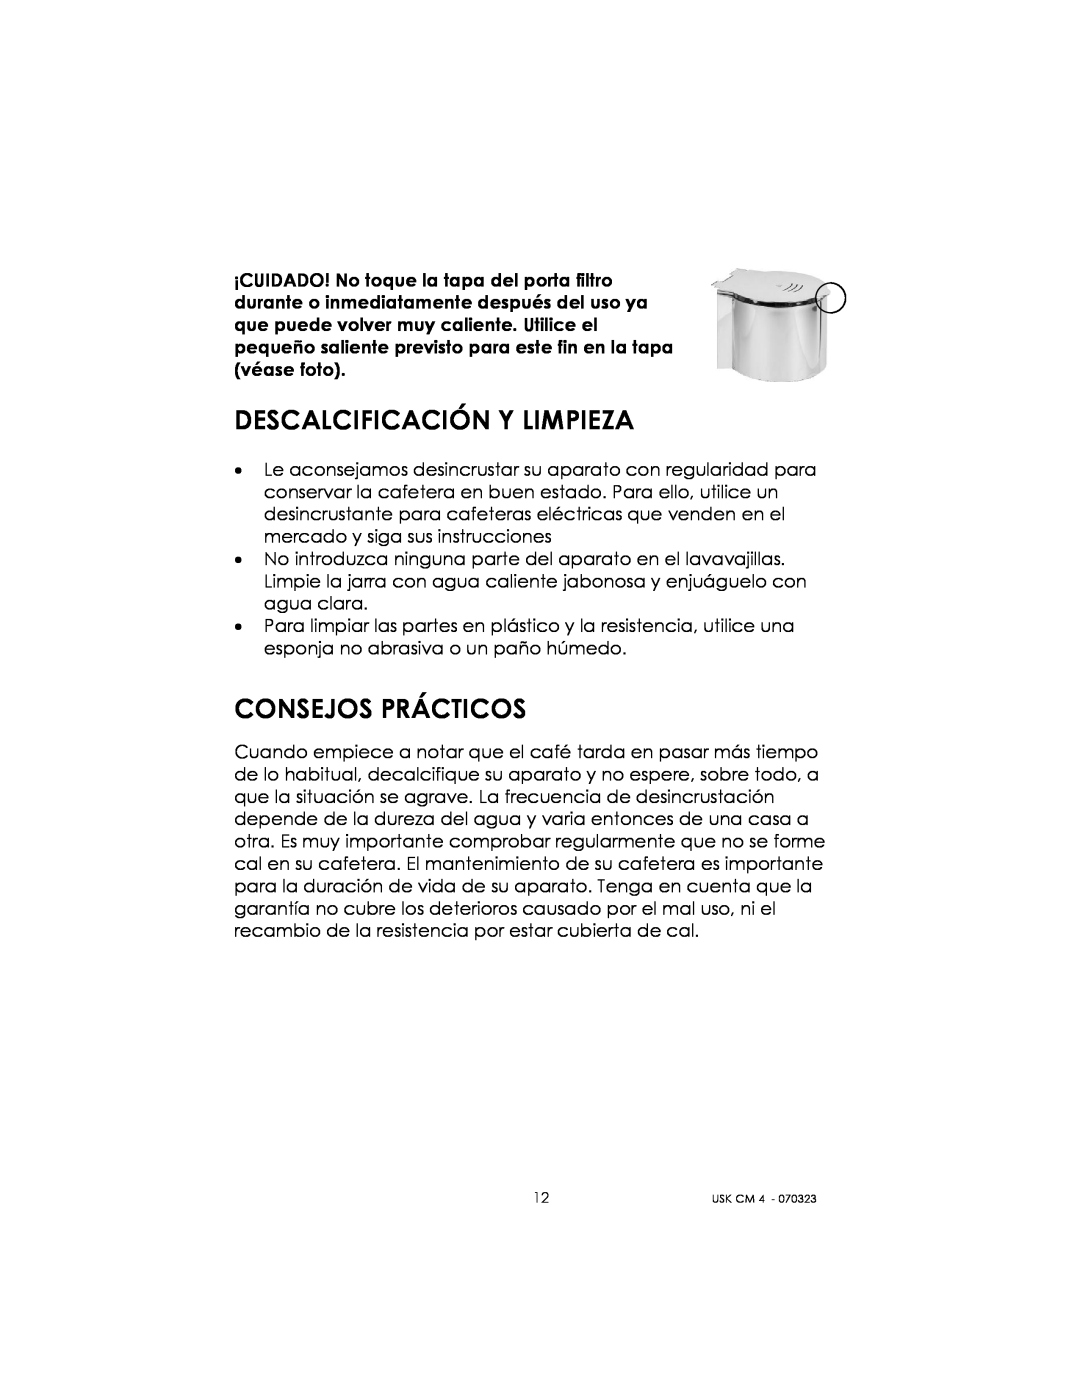 Kalorik USK CM 4 manual Descalcificación Y Limpieza, Consejos Prácticos 